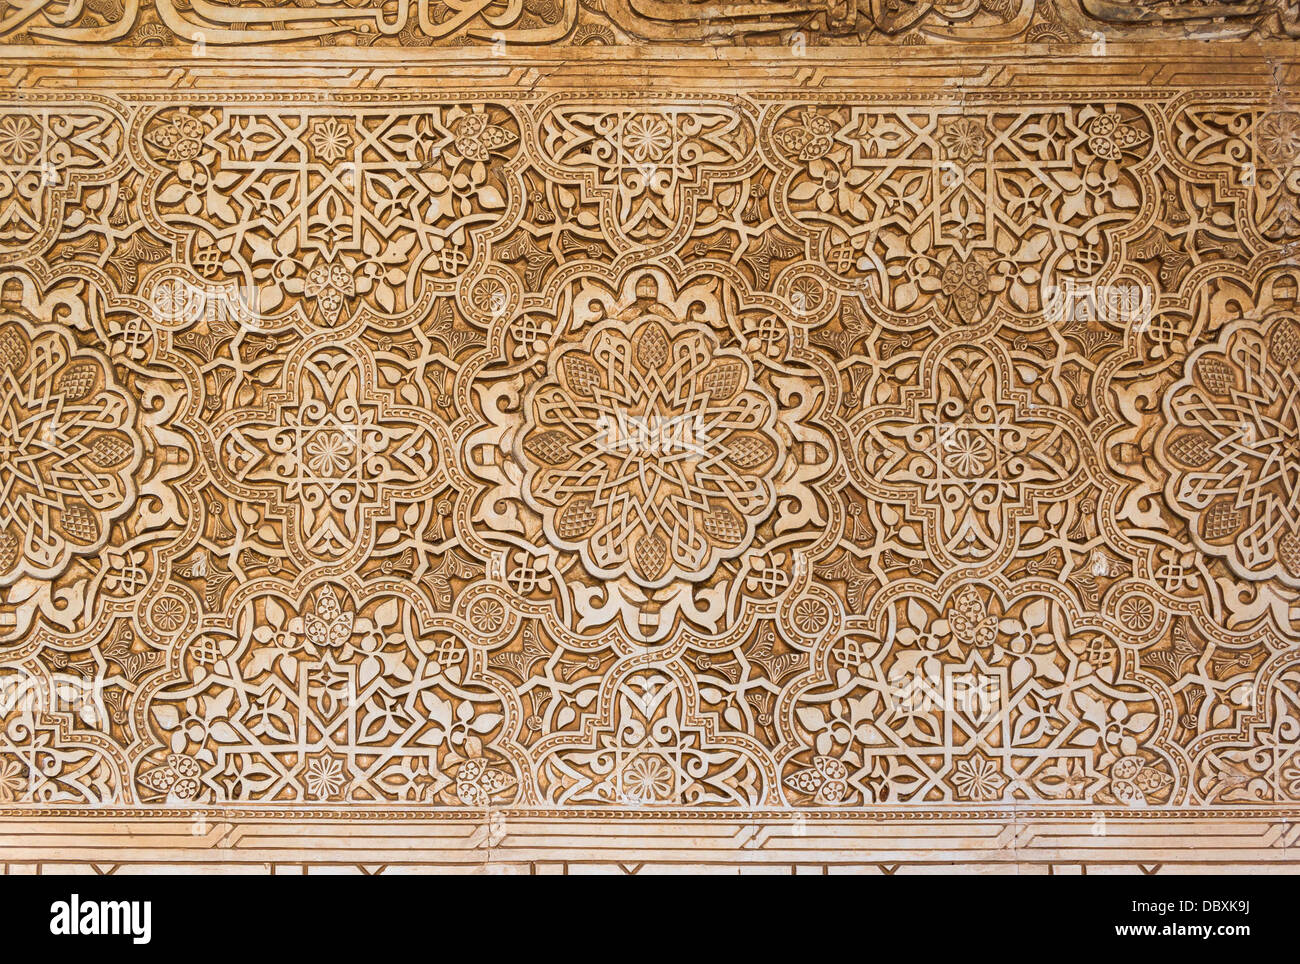 Détails des arabesques mur dans le Patio de los Leones, Alhambra, Grenade, Espagne. Banque D'Images